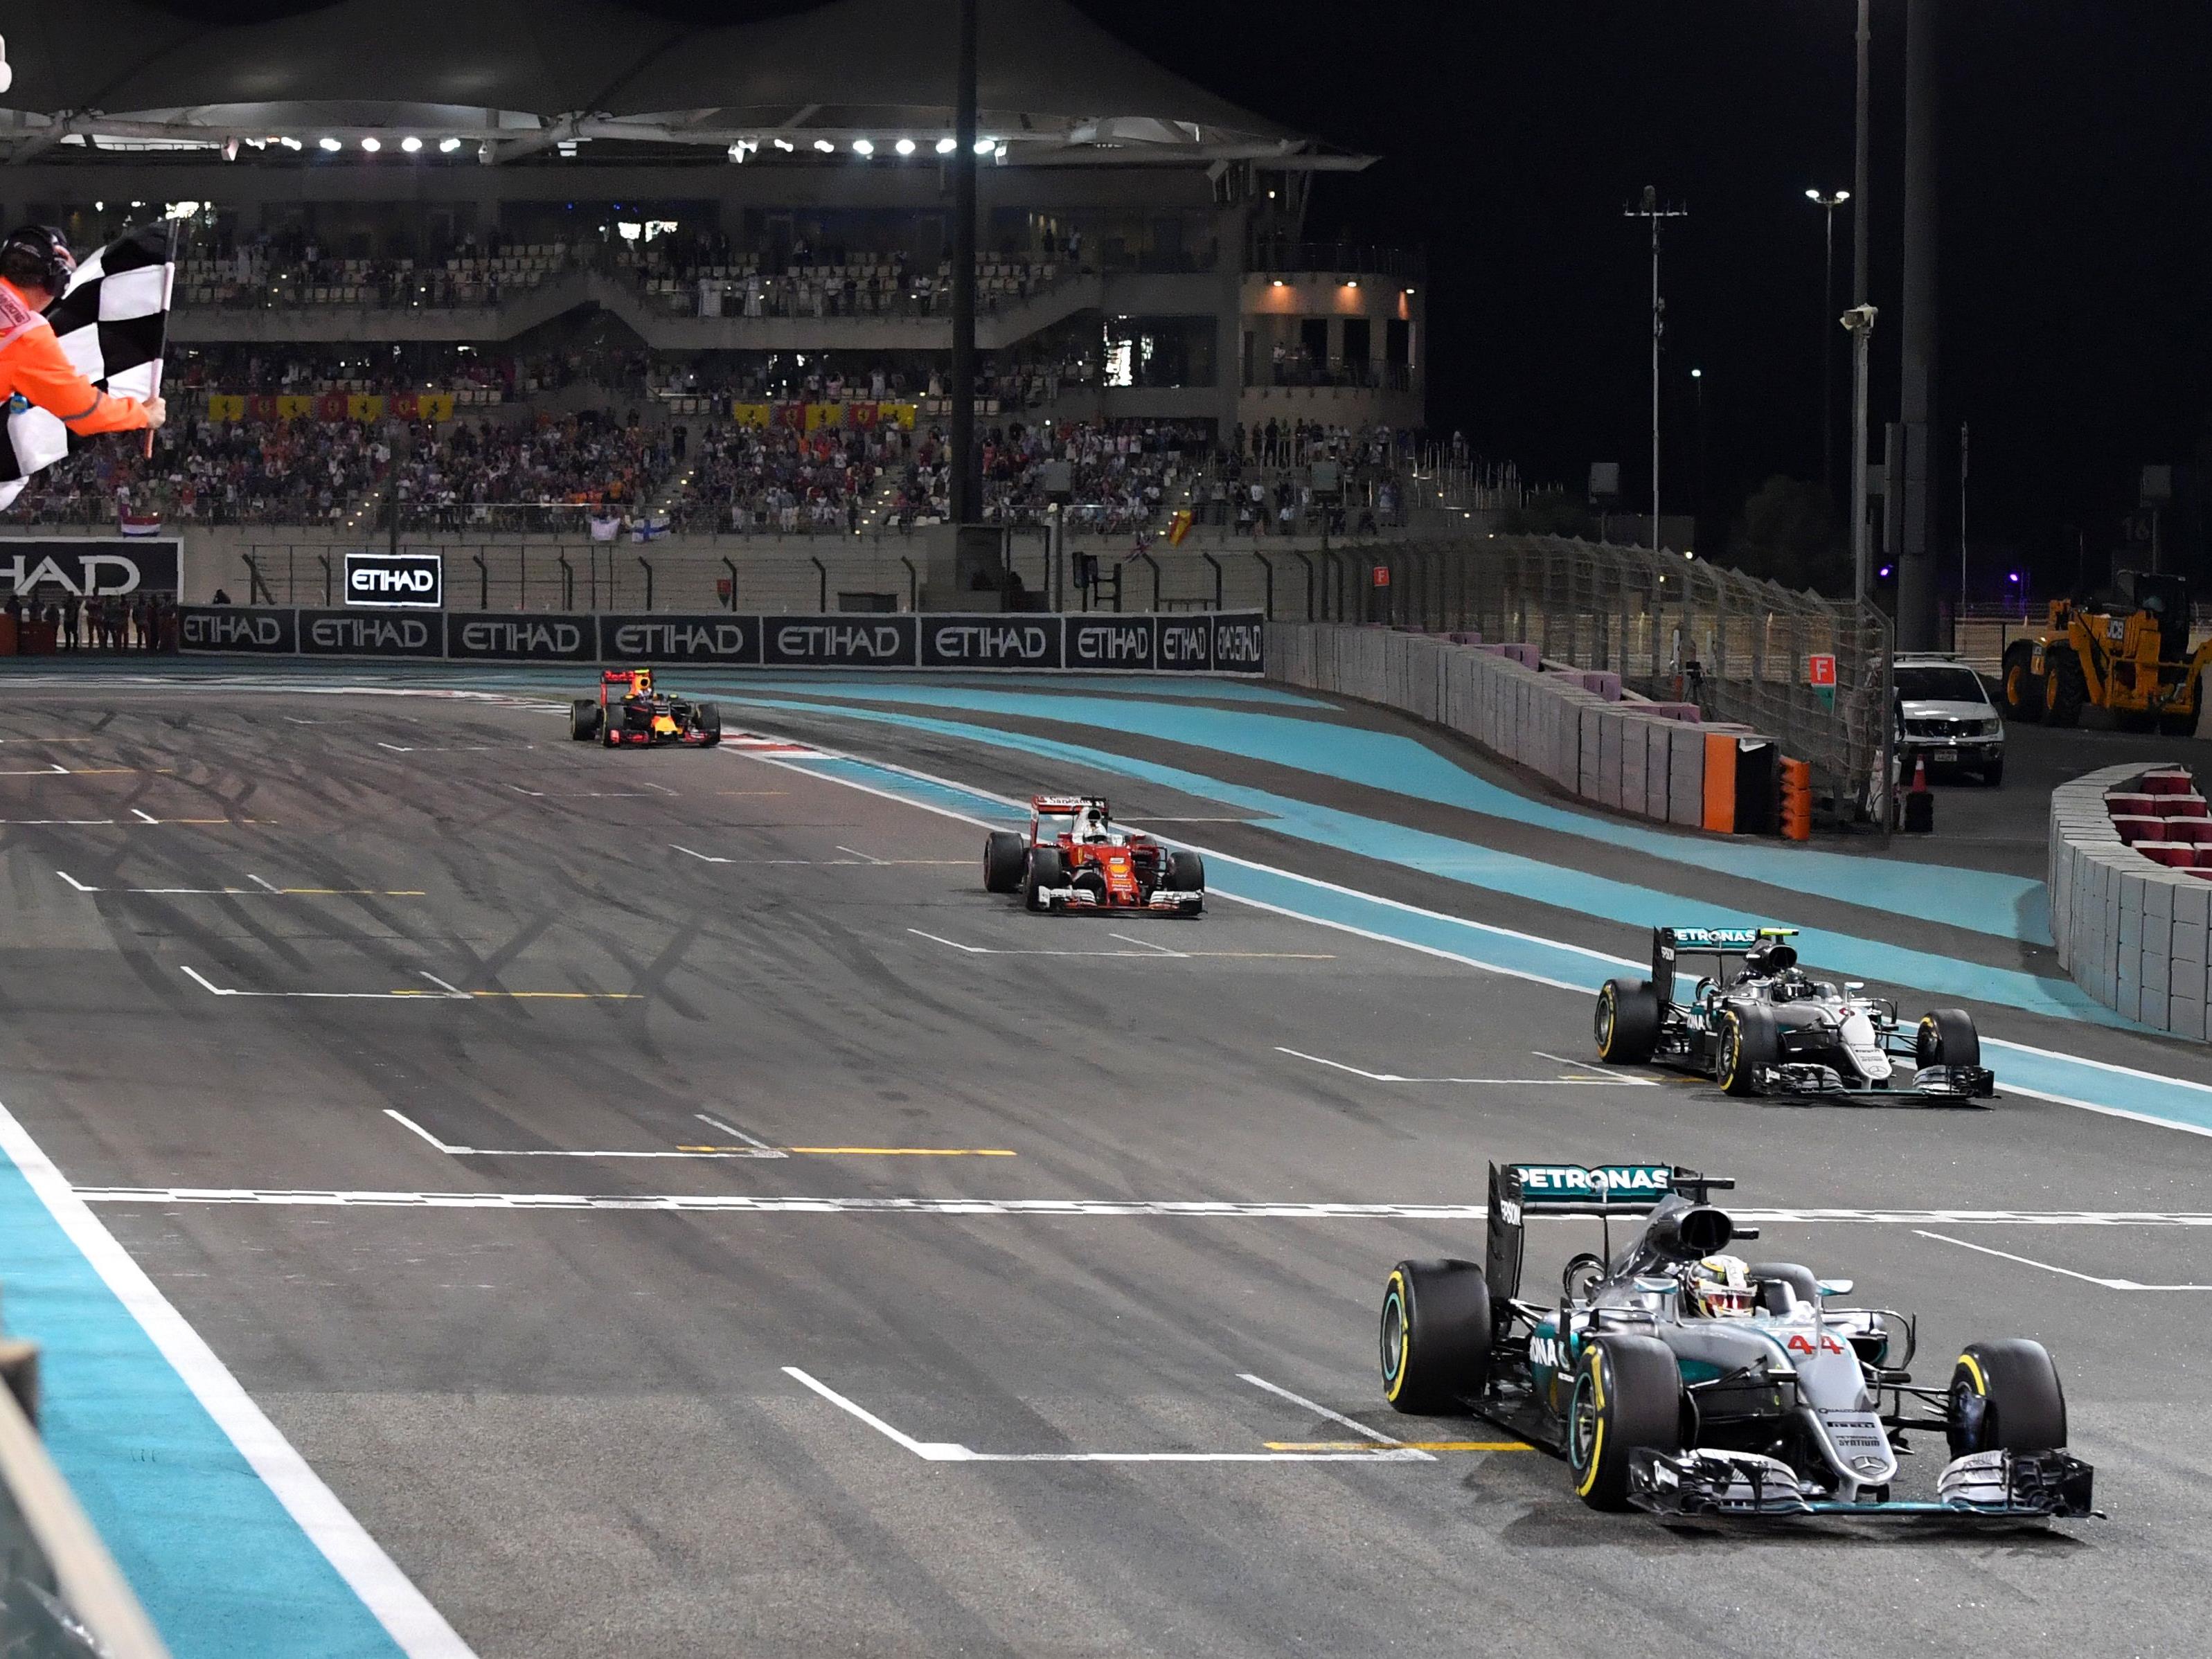 Der Zieleinlauf: Lewis Hamilton ist vorne, aber Rosbergs zweiter Platz reicht zum Titel.